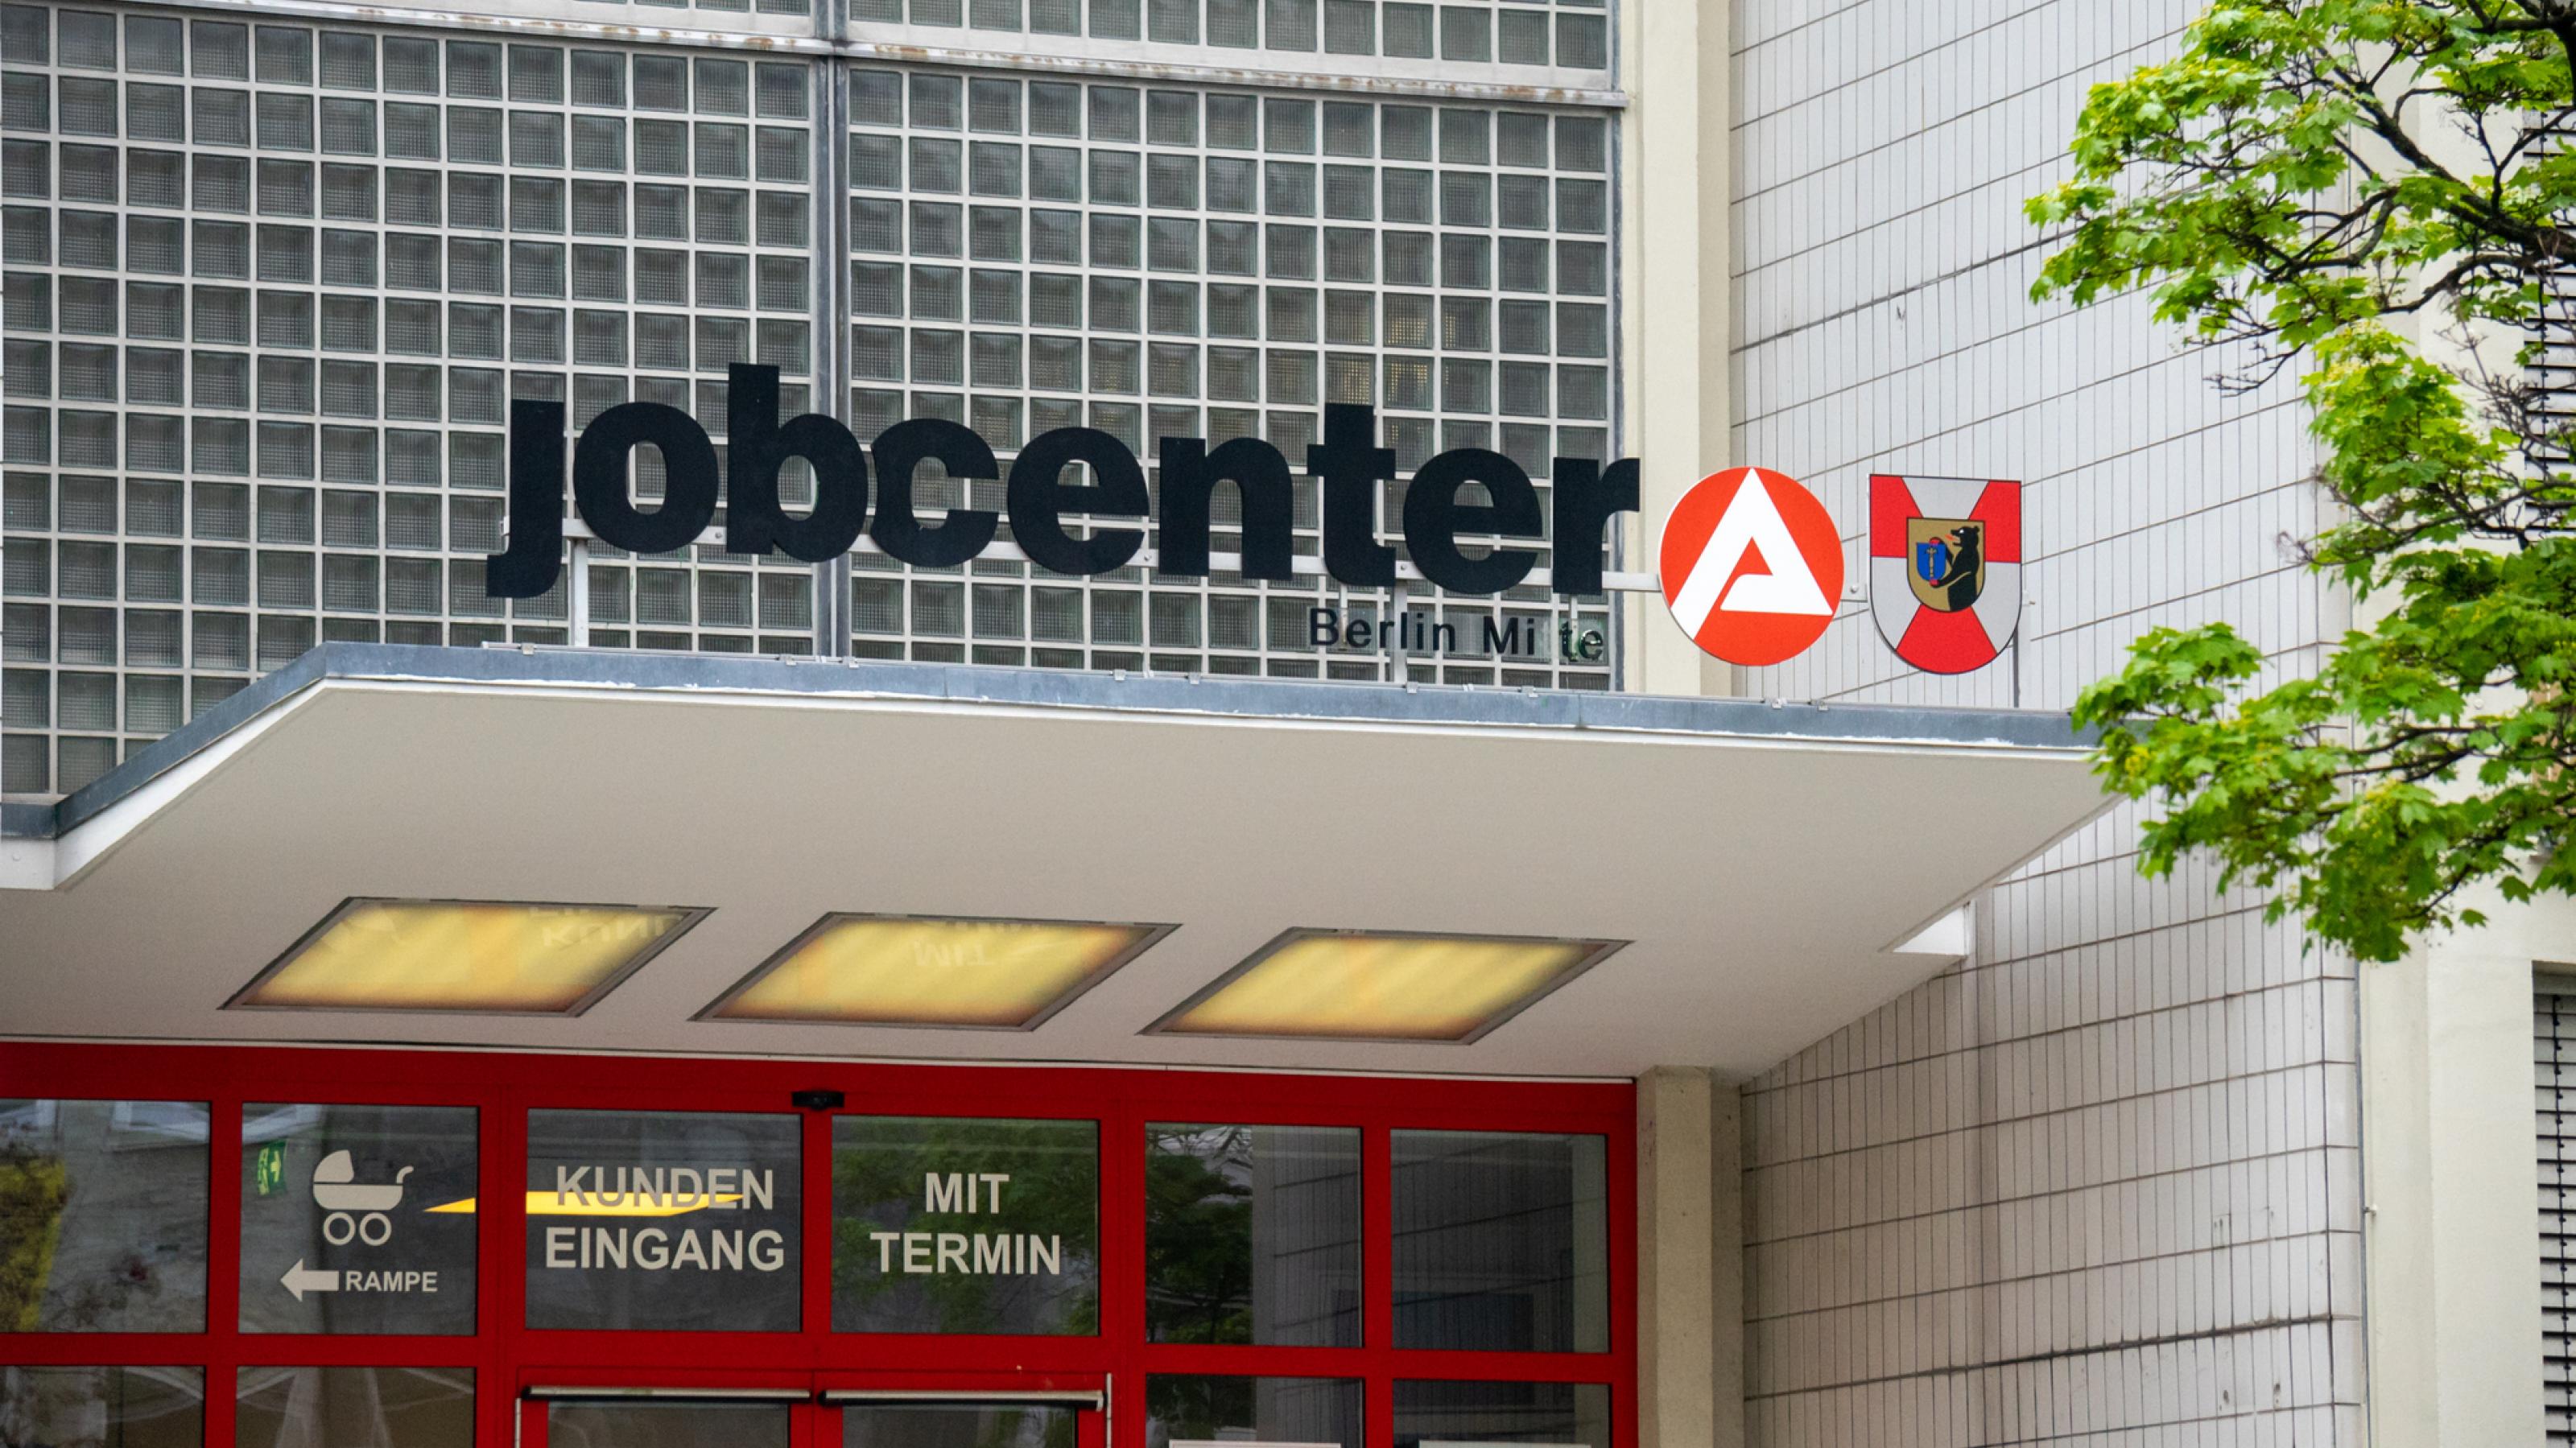 Eingang des Jobcenters in Berlin-Mitte mit dem großen Logo der Behörde auf einem Vordach.